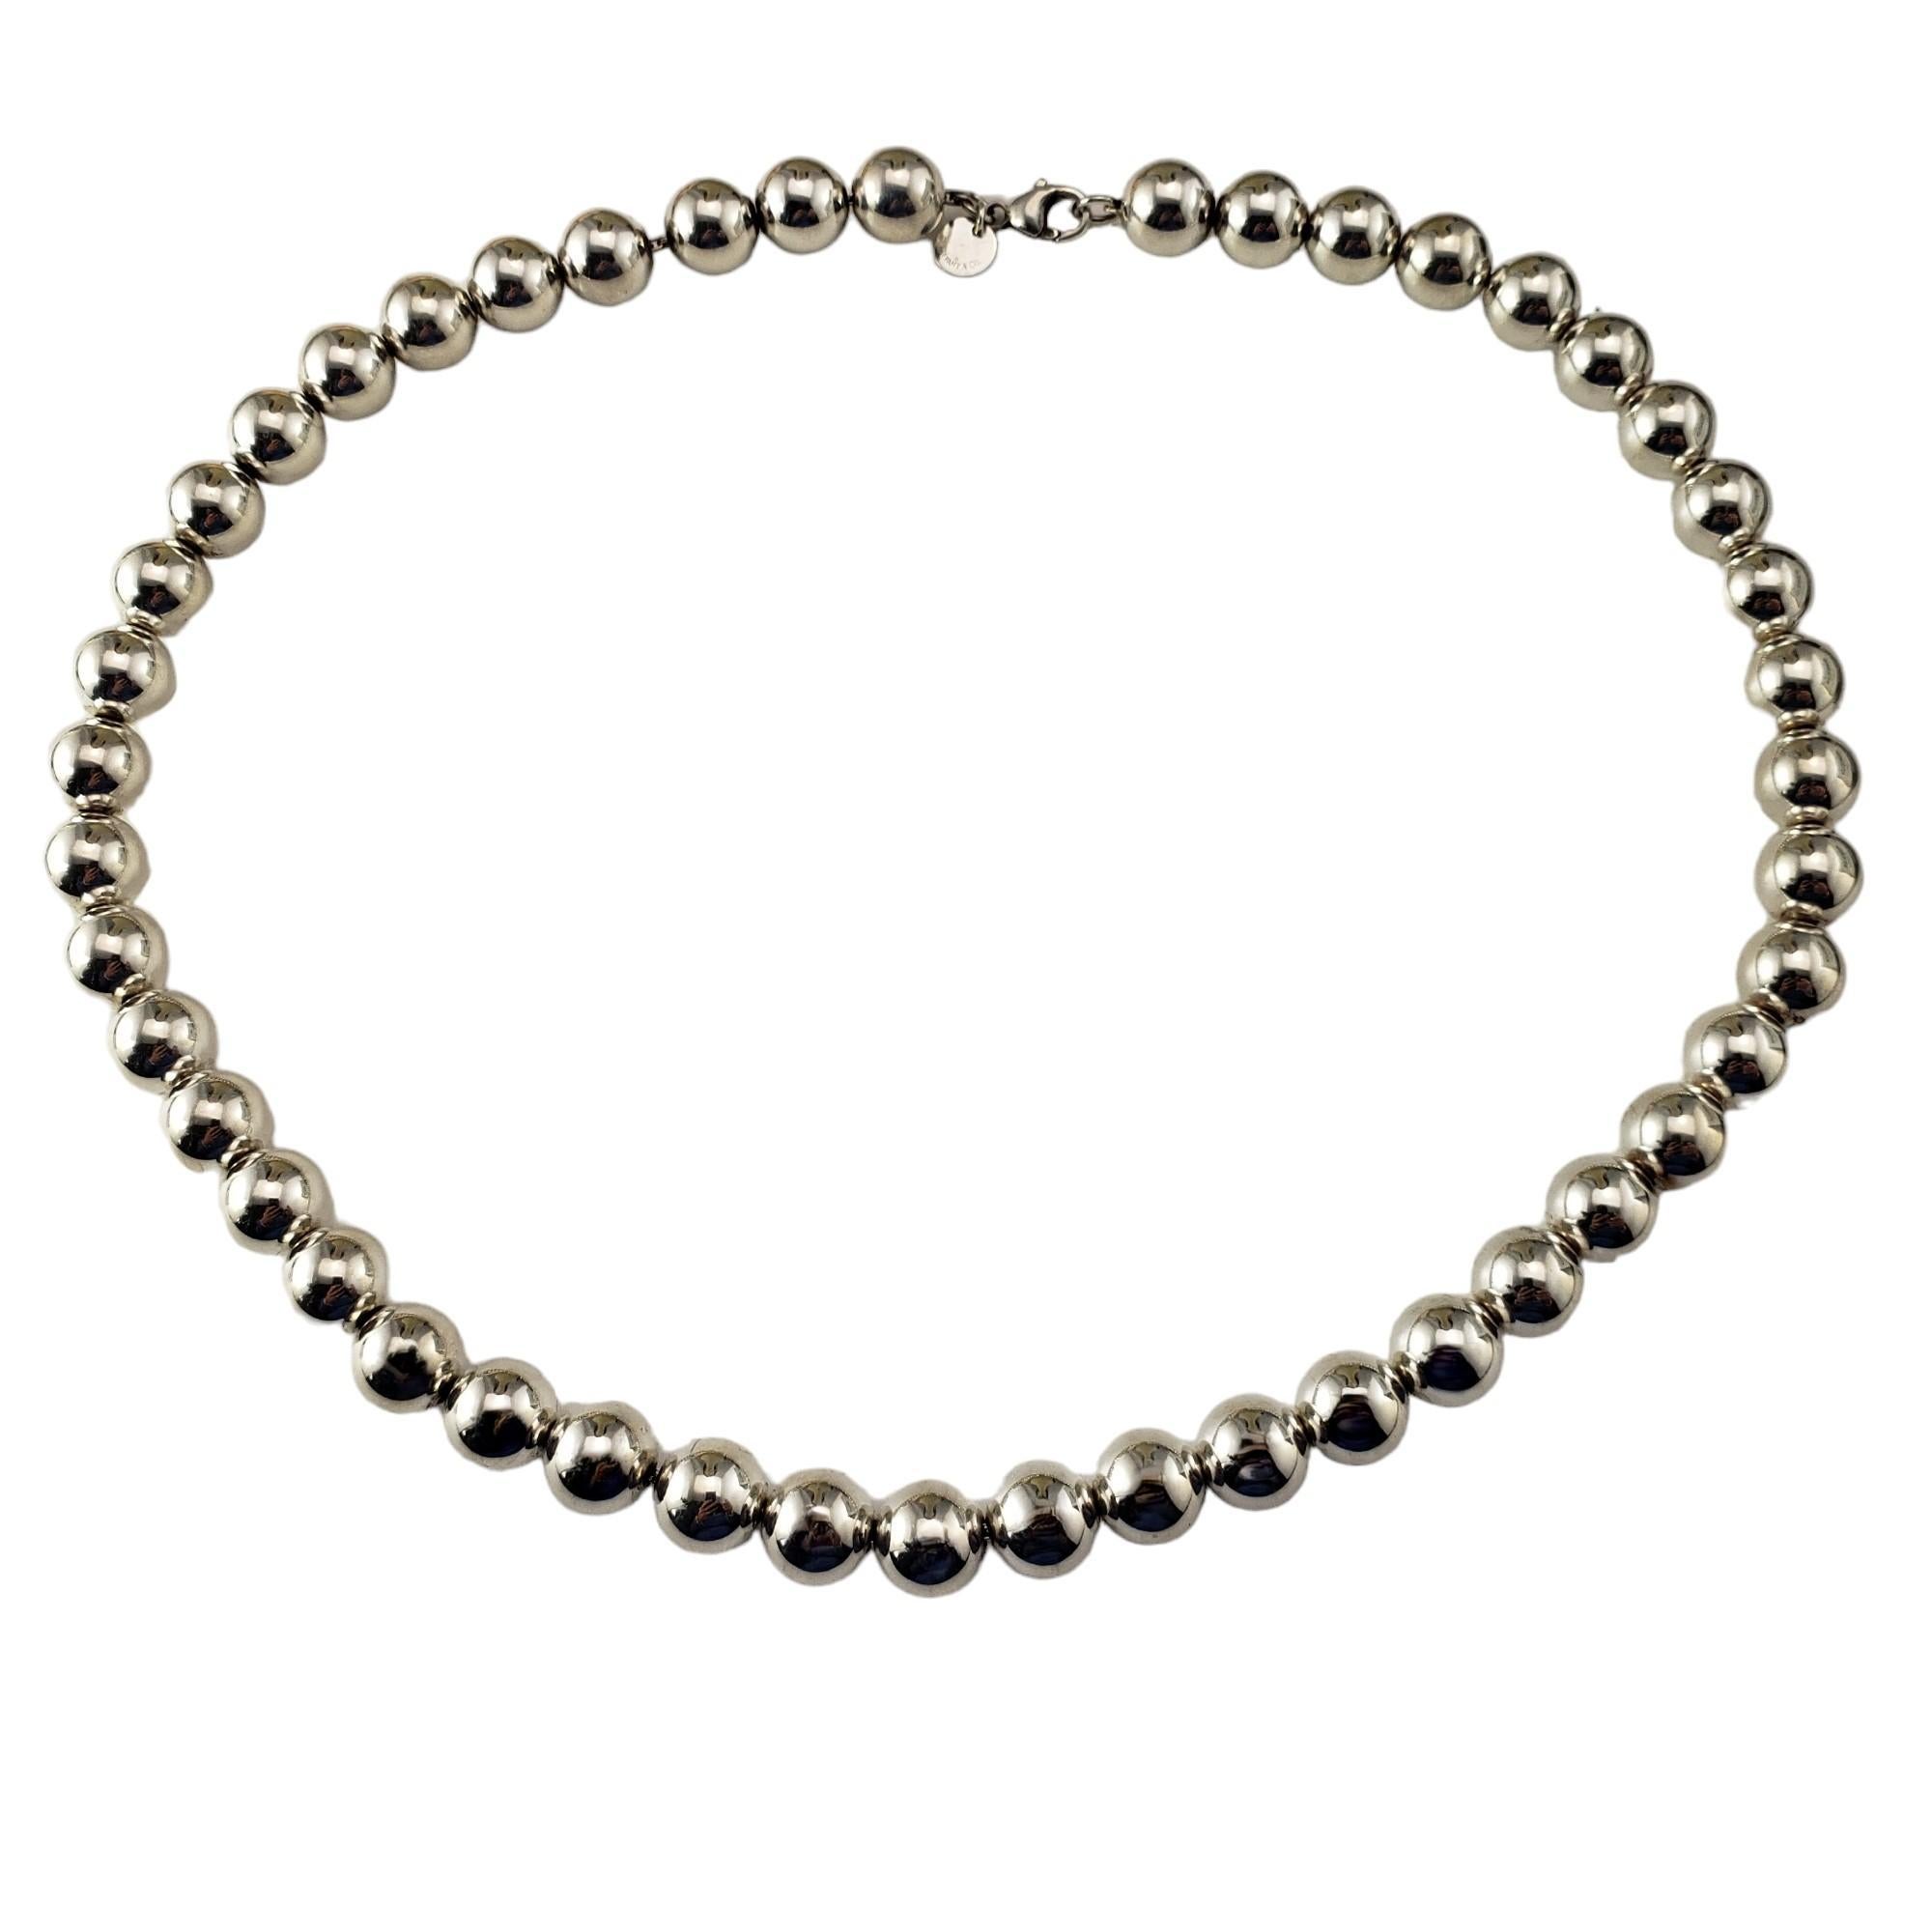 Tiffany & Co. Sterling Silber Kugel Halskette-

Diese schöne Kugel-Halskette ist aus elegantem Sterlingsilber von Tiffany & Co. gefertigt.  

Breite: 10 mm.

Passendes Armband: #17162
Passende Ohrringe: #17163

Größe: 18 Zoll

Wahrzeichen:  TIFFANY